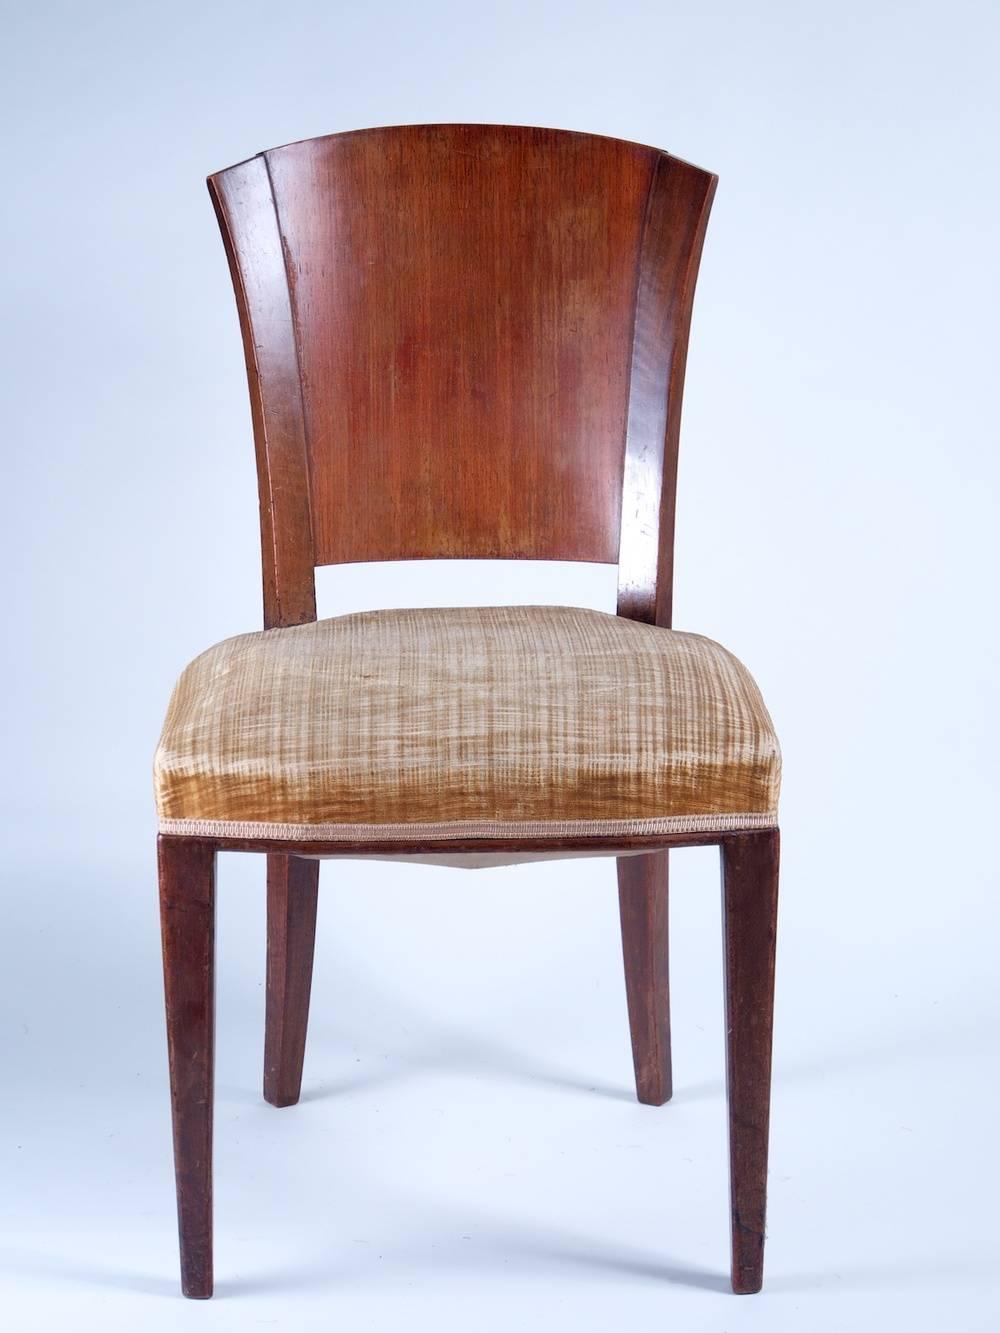 Sechser-Set französischer Art-Déco-Esszimmerstühle aus Palisander und französischem Nussbaum, um 1932.

Bitte beachten Sie, dass diese Stühle auf den Fotos unrestauriert sind.
 
**Im Preis inbegriffen ist die fachgerechte Restaurierung,